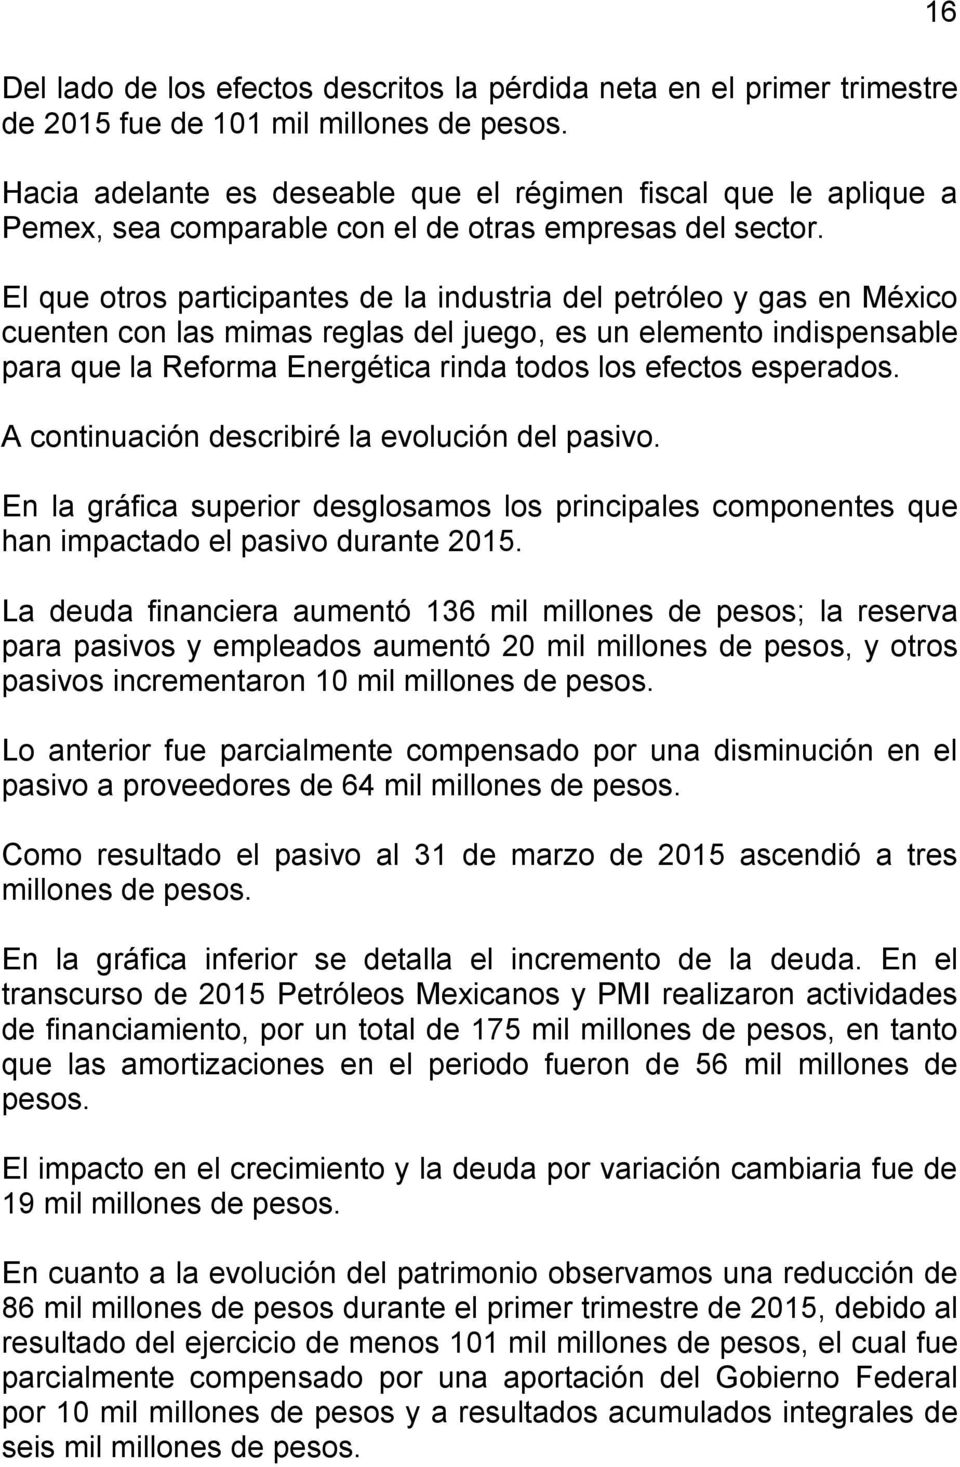 El que otros participantes de la industria del petróleo y gas en México cuenten con las mimas reglas del juego, es un elemento indispensable para que la Reforma Energética rinda todos los efectos